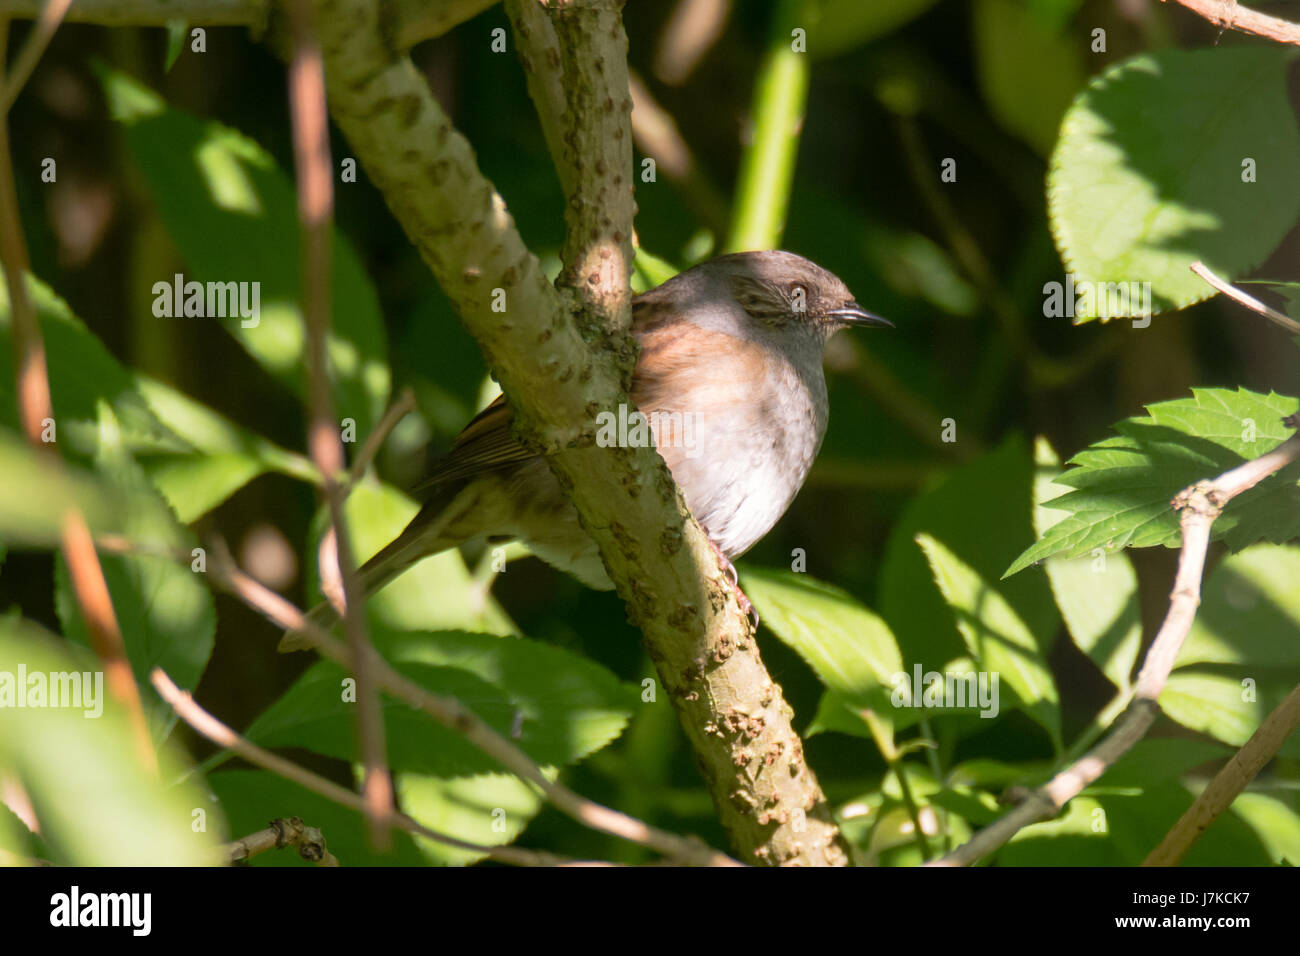 Heckenbraunelle (Prunella Modularis) Vogel sitzend auf Ast. Vogel in der Familie Prunellidae Sitzung unter Dichter vegetation Stockfoto